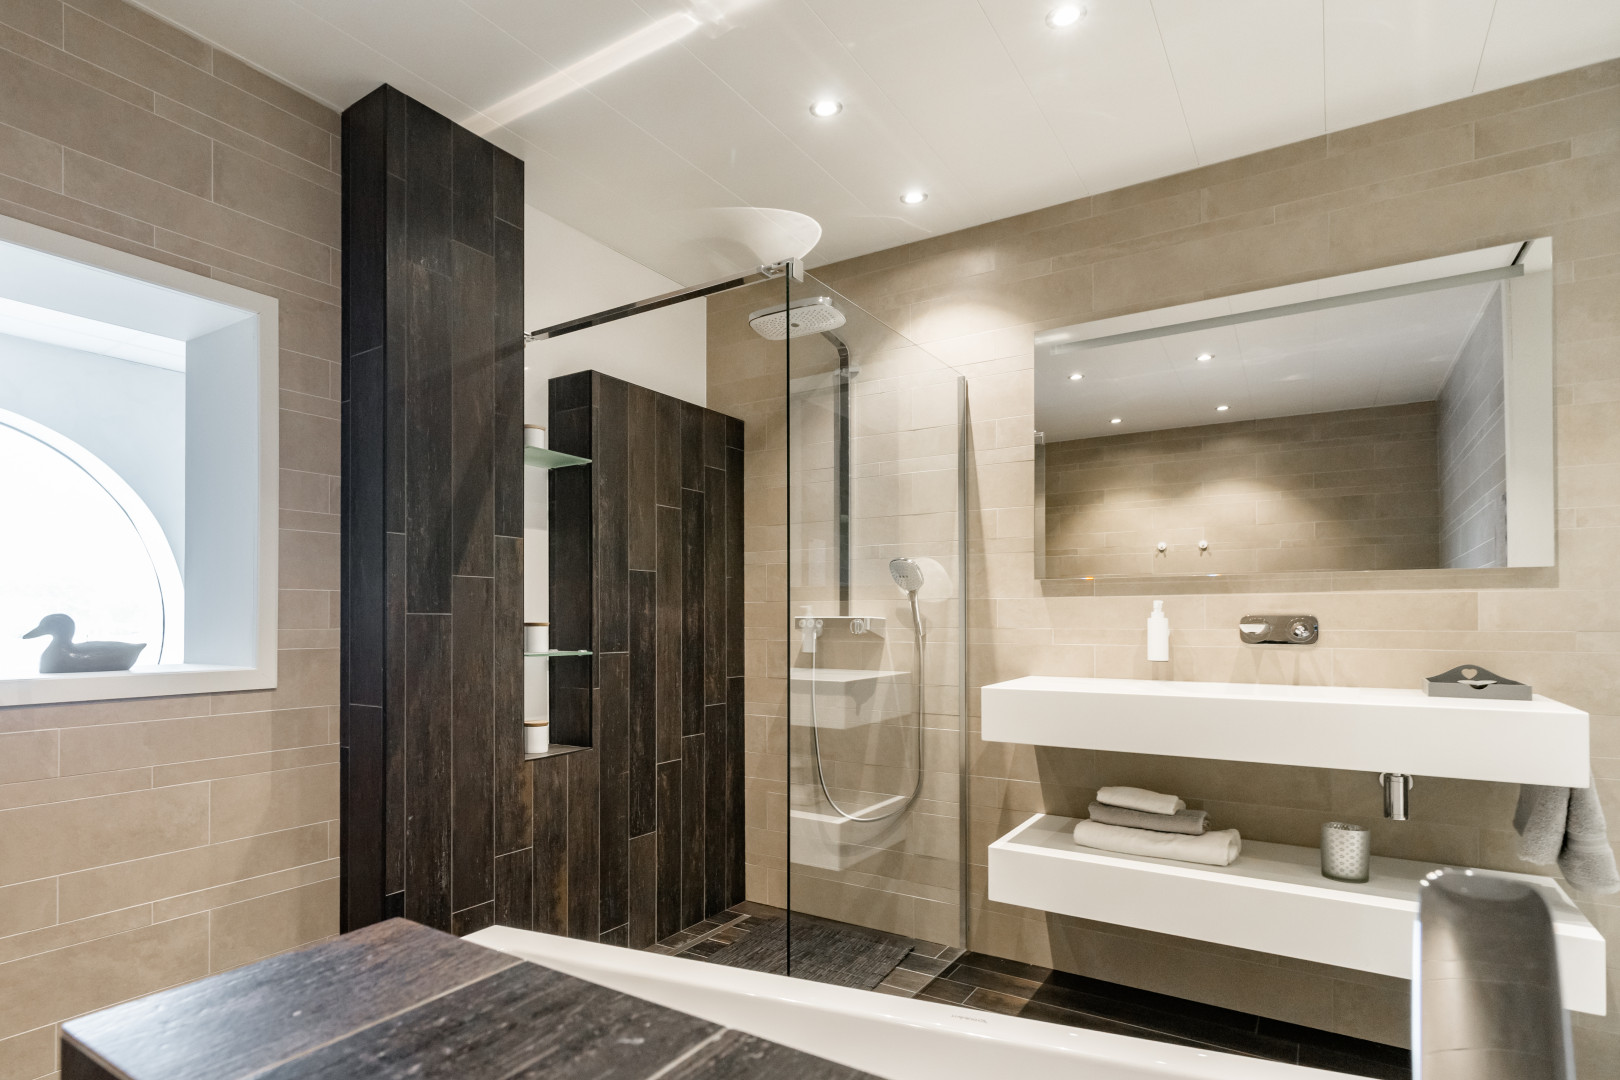 Nieuwe badkamer van Sleurs & Vangompel